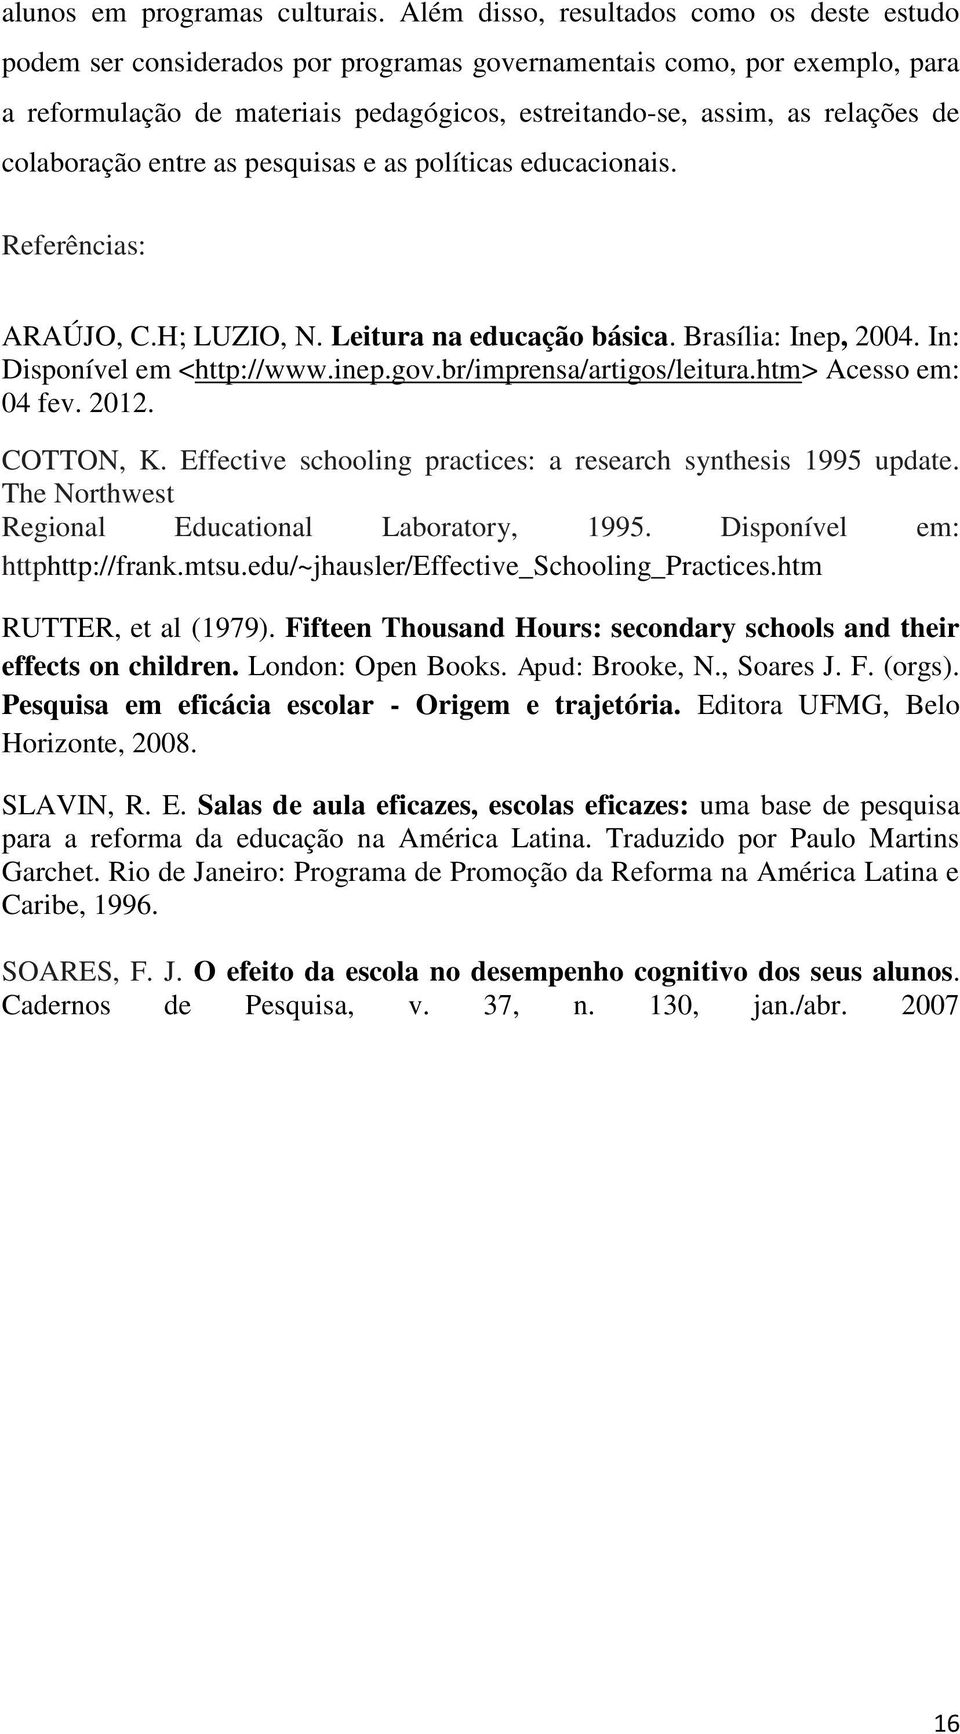 colaboração entre as pesquisas e as políticas educacionais. Referências: ARAÚJO, C.H; LUZIO, N. Leitura na educação básica. Brasília: Inep, 2004. In: Disponível em <http://www.inep.gov.